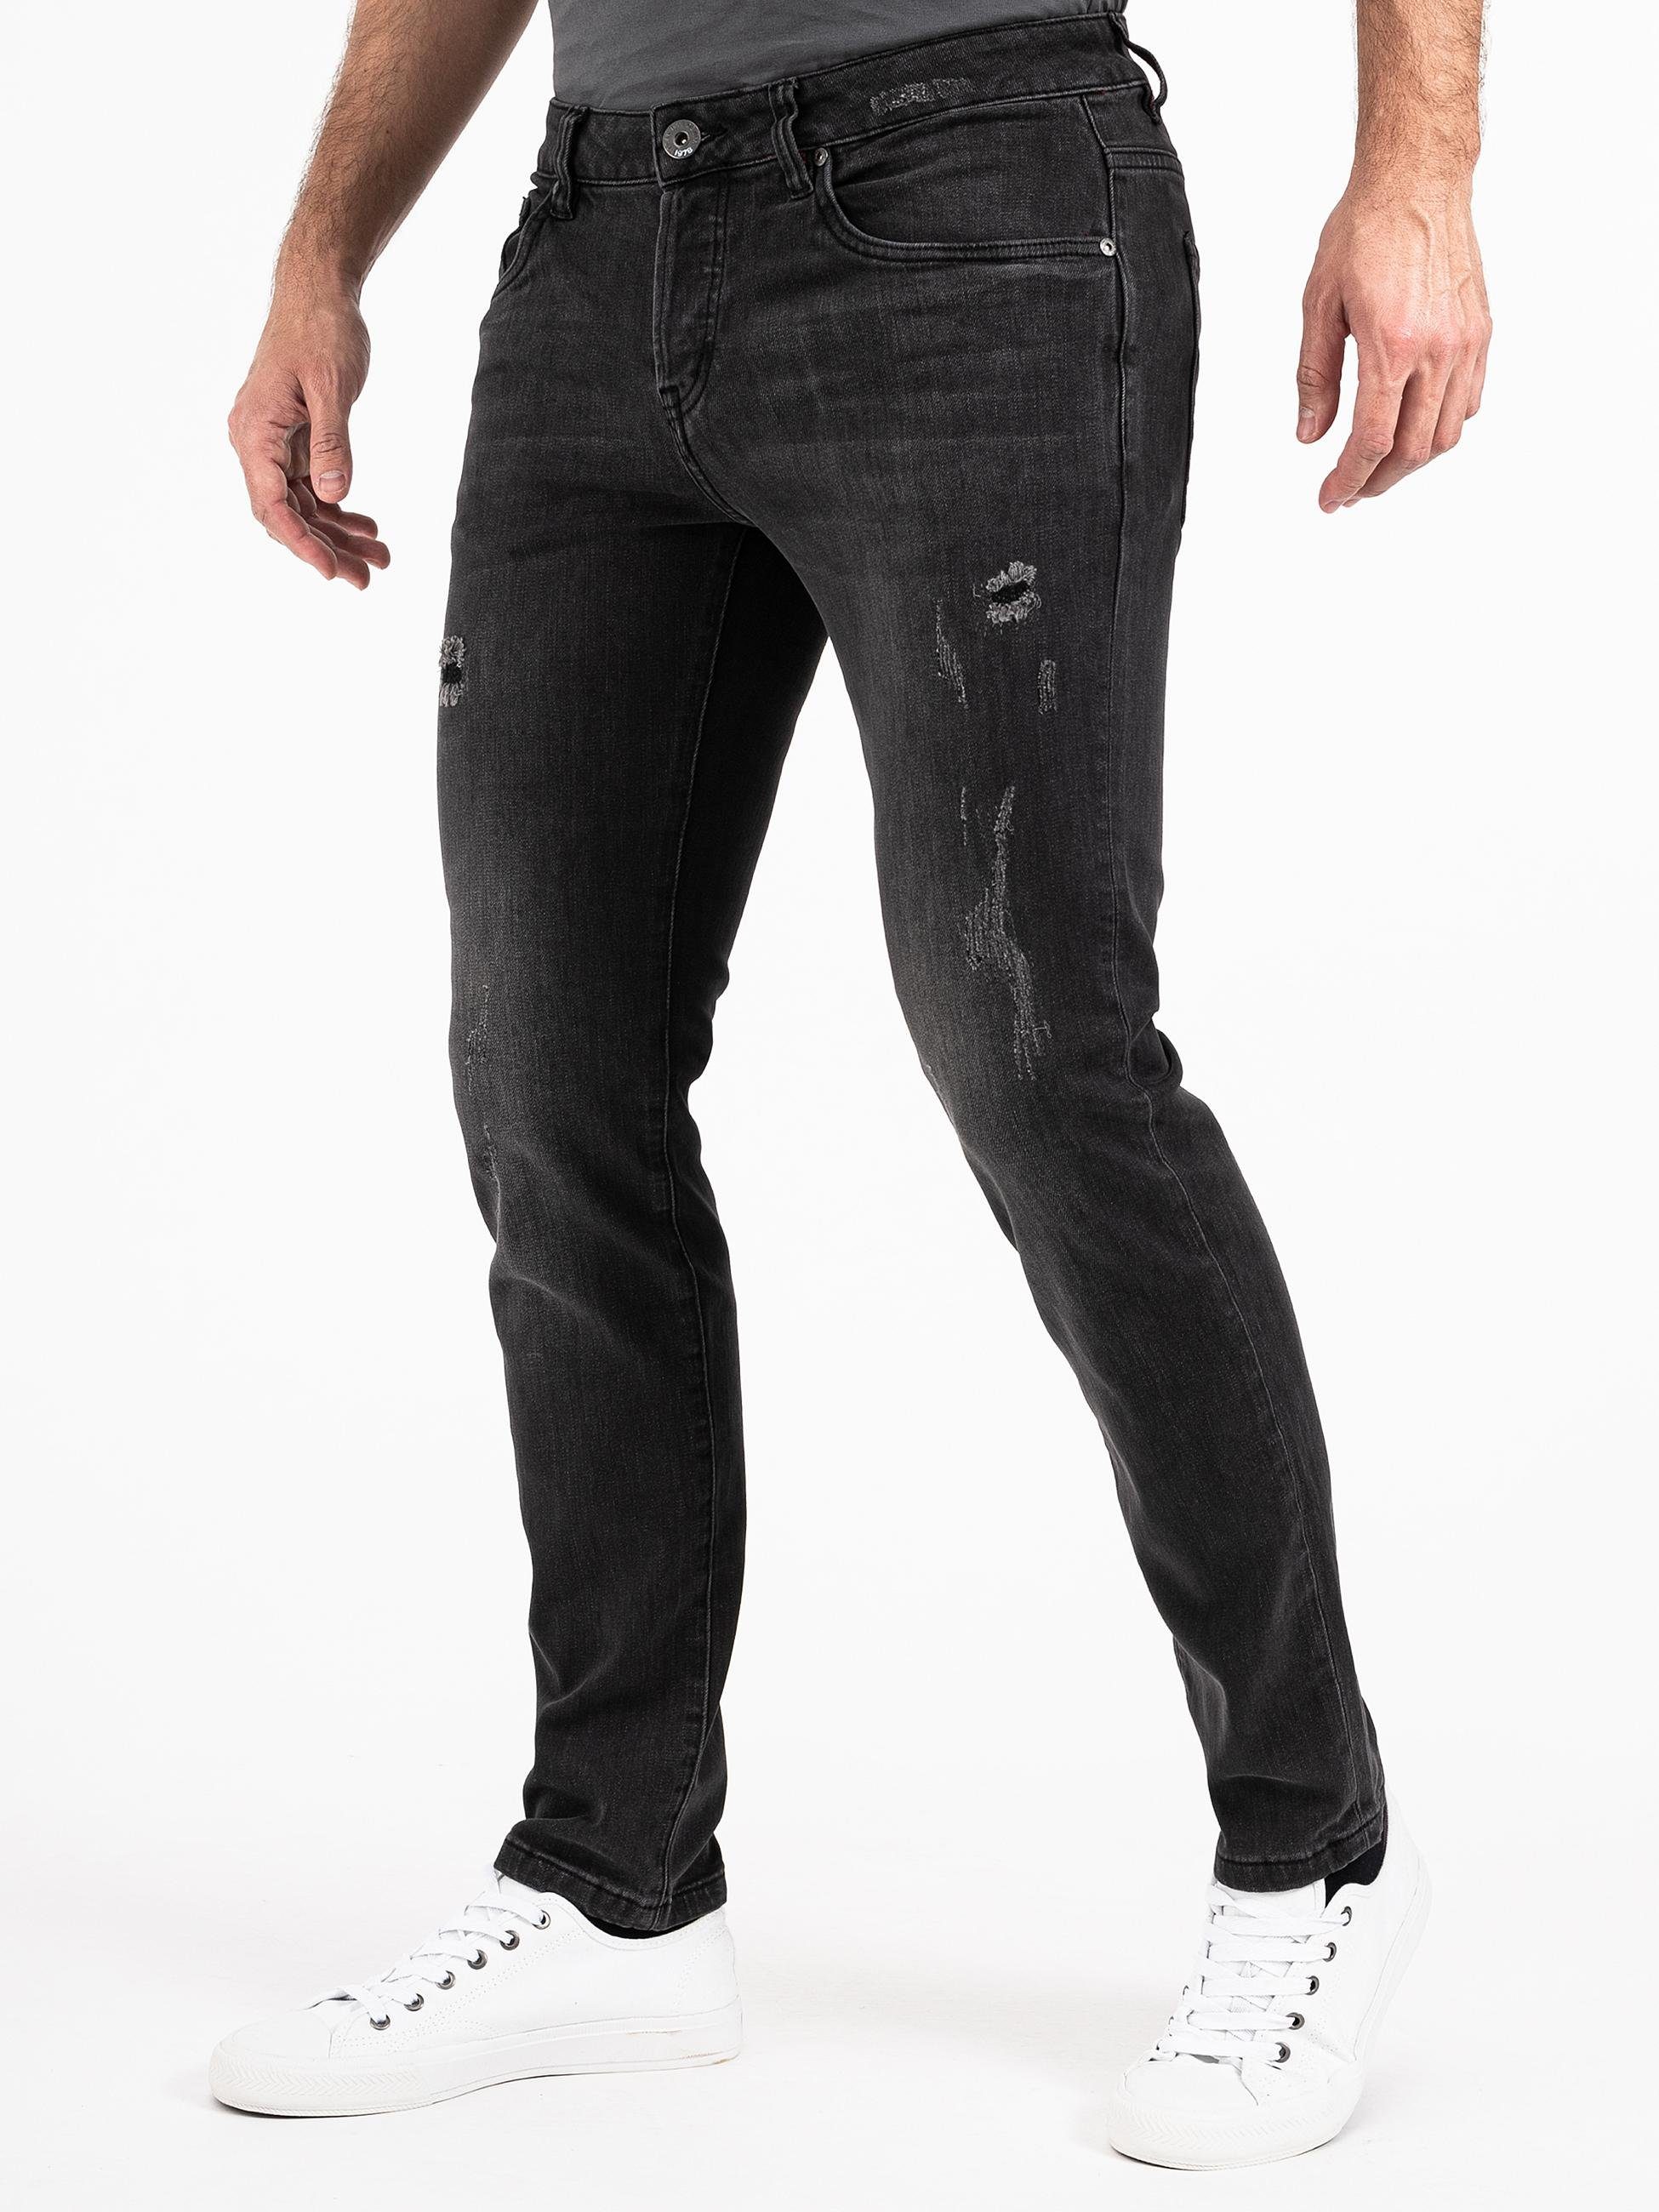 PEAK TIME Slim-fit-Jeans München Herren Stretch-Bund Jeans dunkelgrau mit Destroyed-Optik und